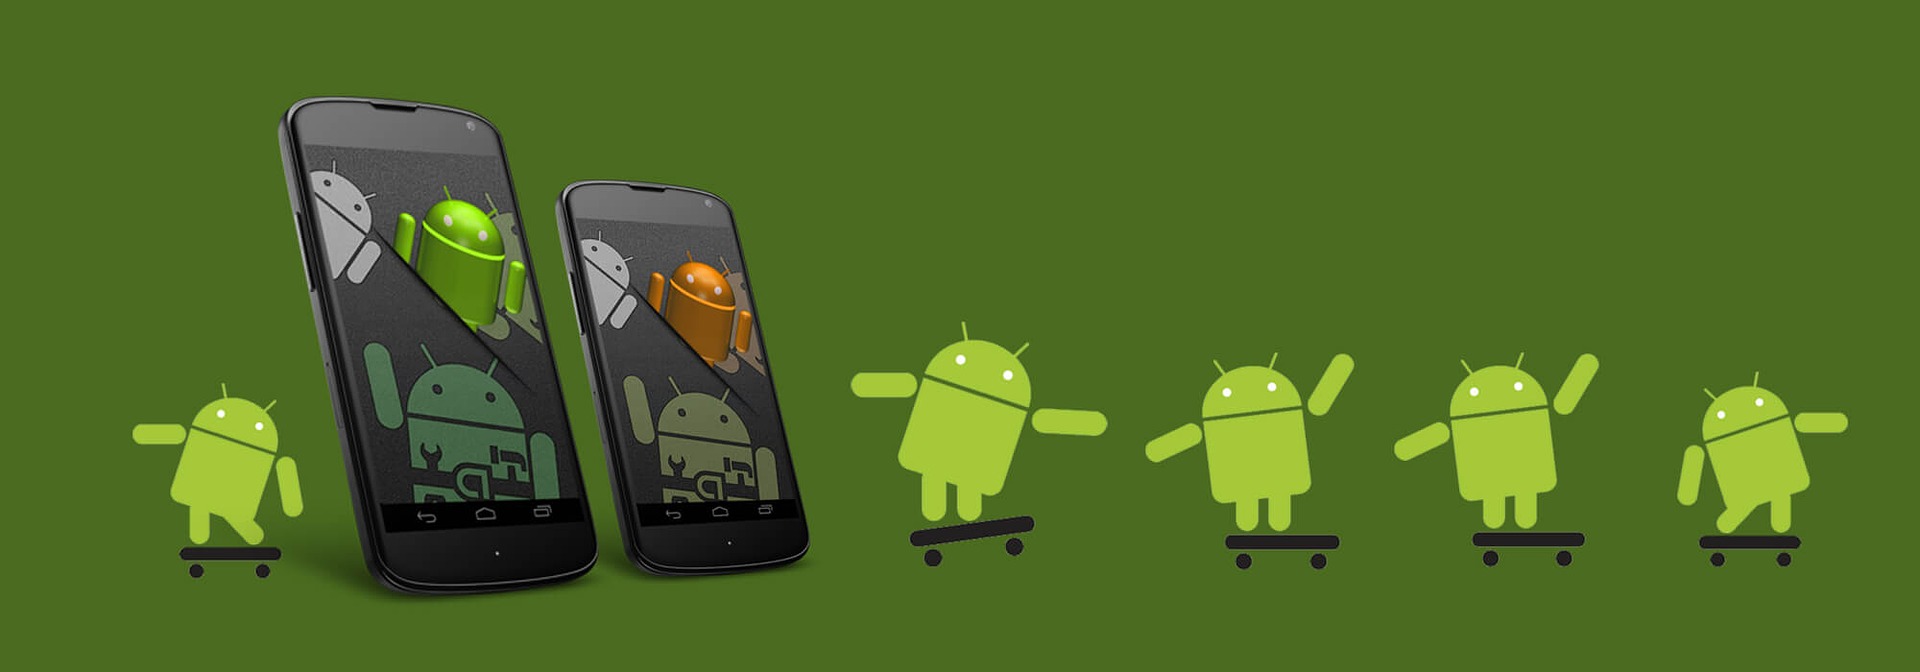 Профессия «Android-разработчик» – престижно, увлекательно и с достойной оплатой